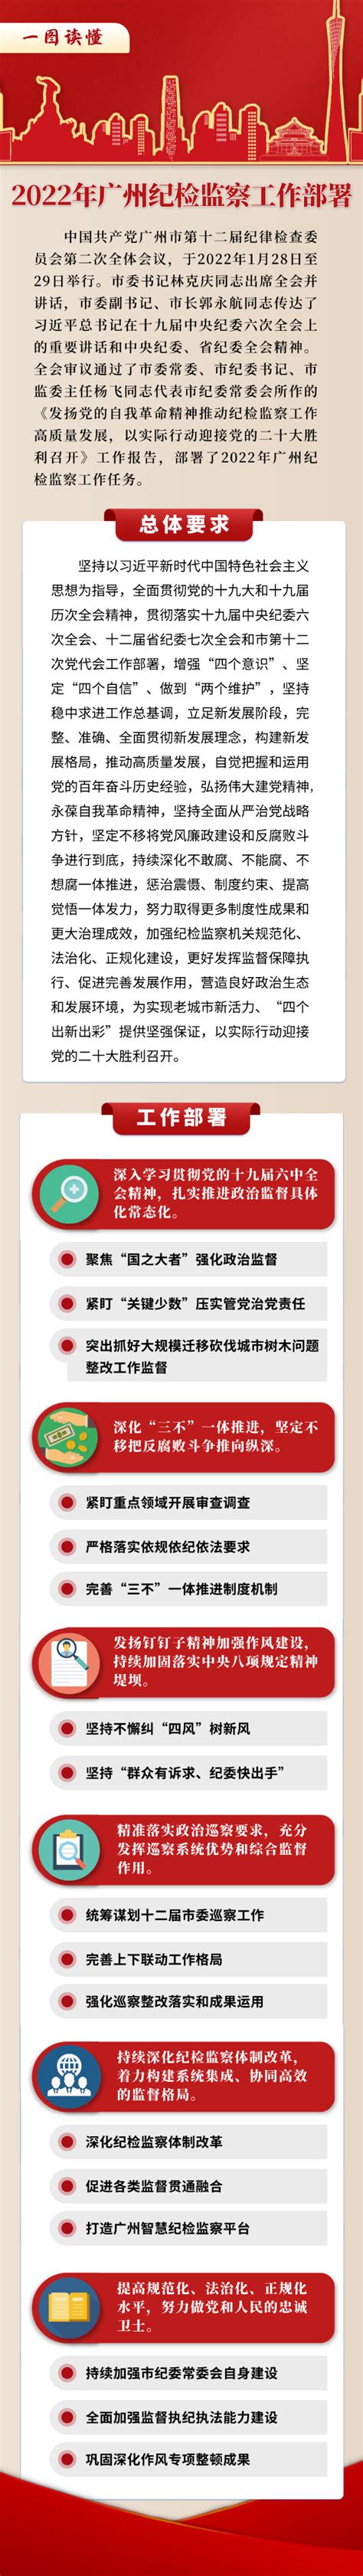 一图读懂2022年广州纪检监察工作部署-广州市纪委监委网站